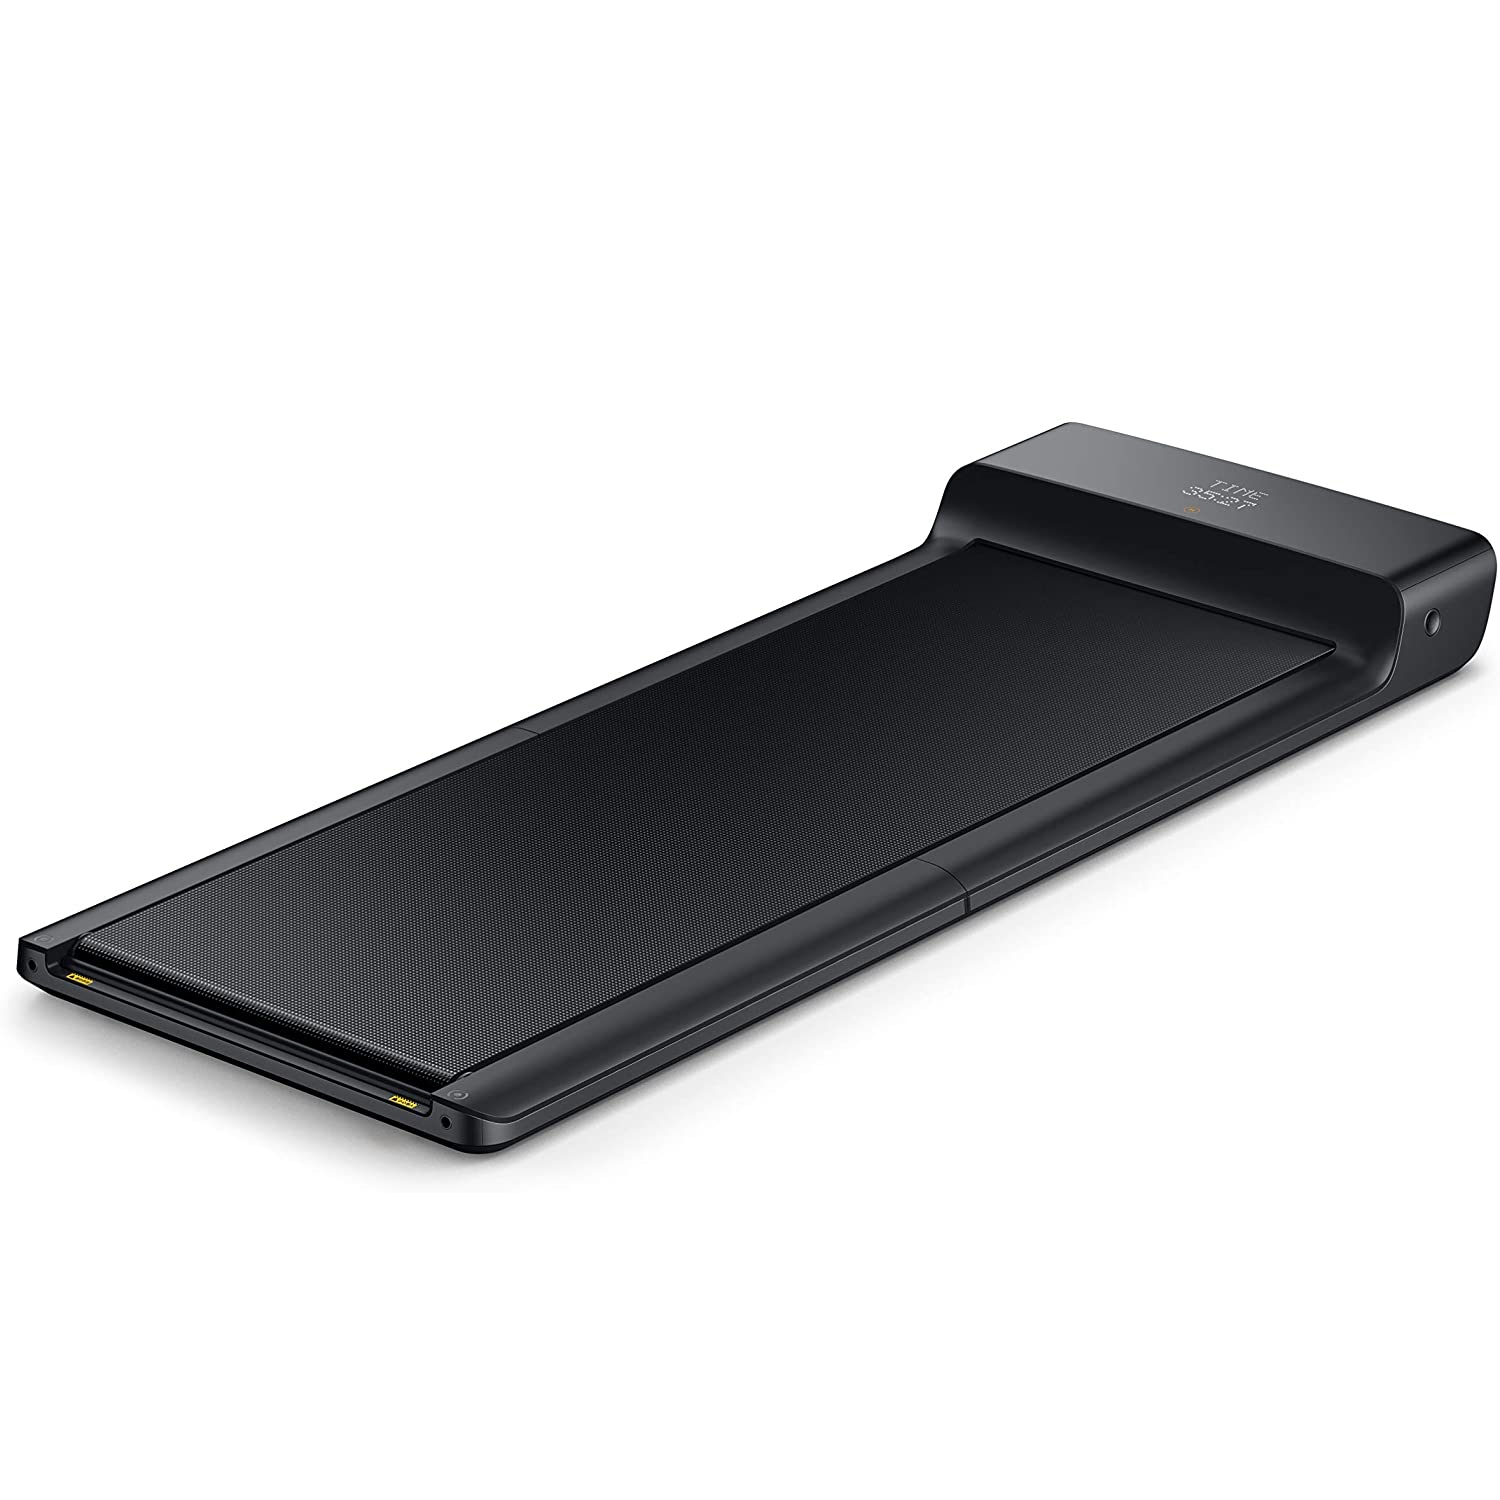 XIAOMI WALKINGPAD A1 PRO Smart Folding Treadmill - Bluetooth-Enabled-Refurbished